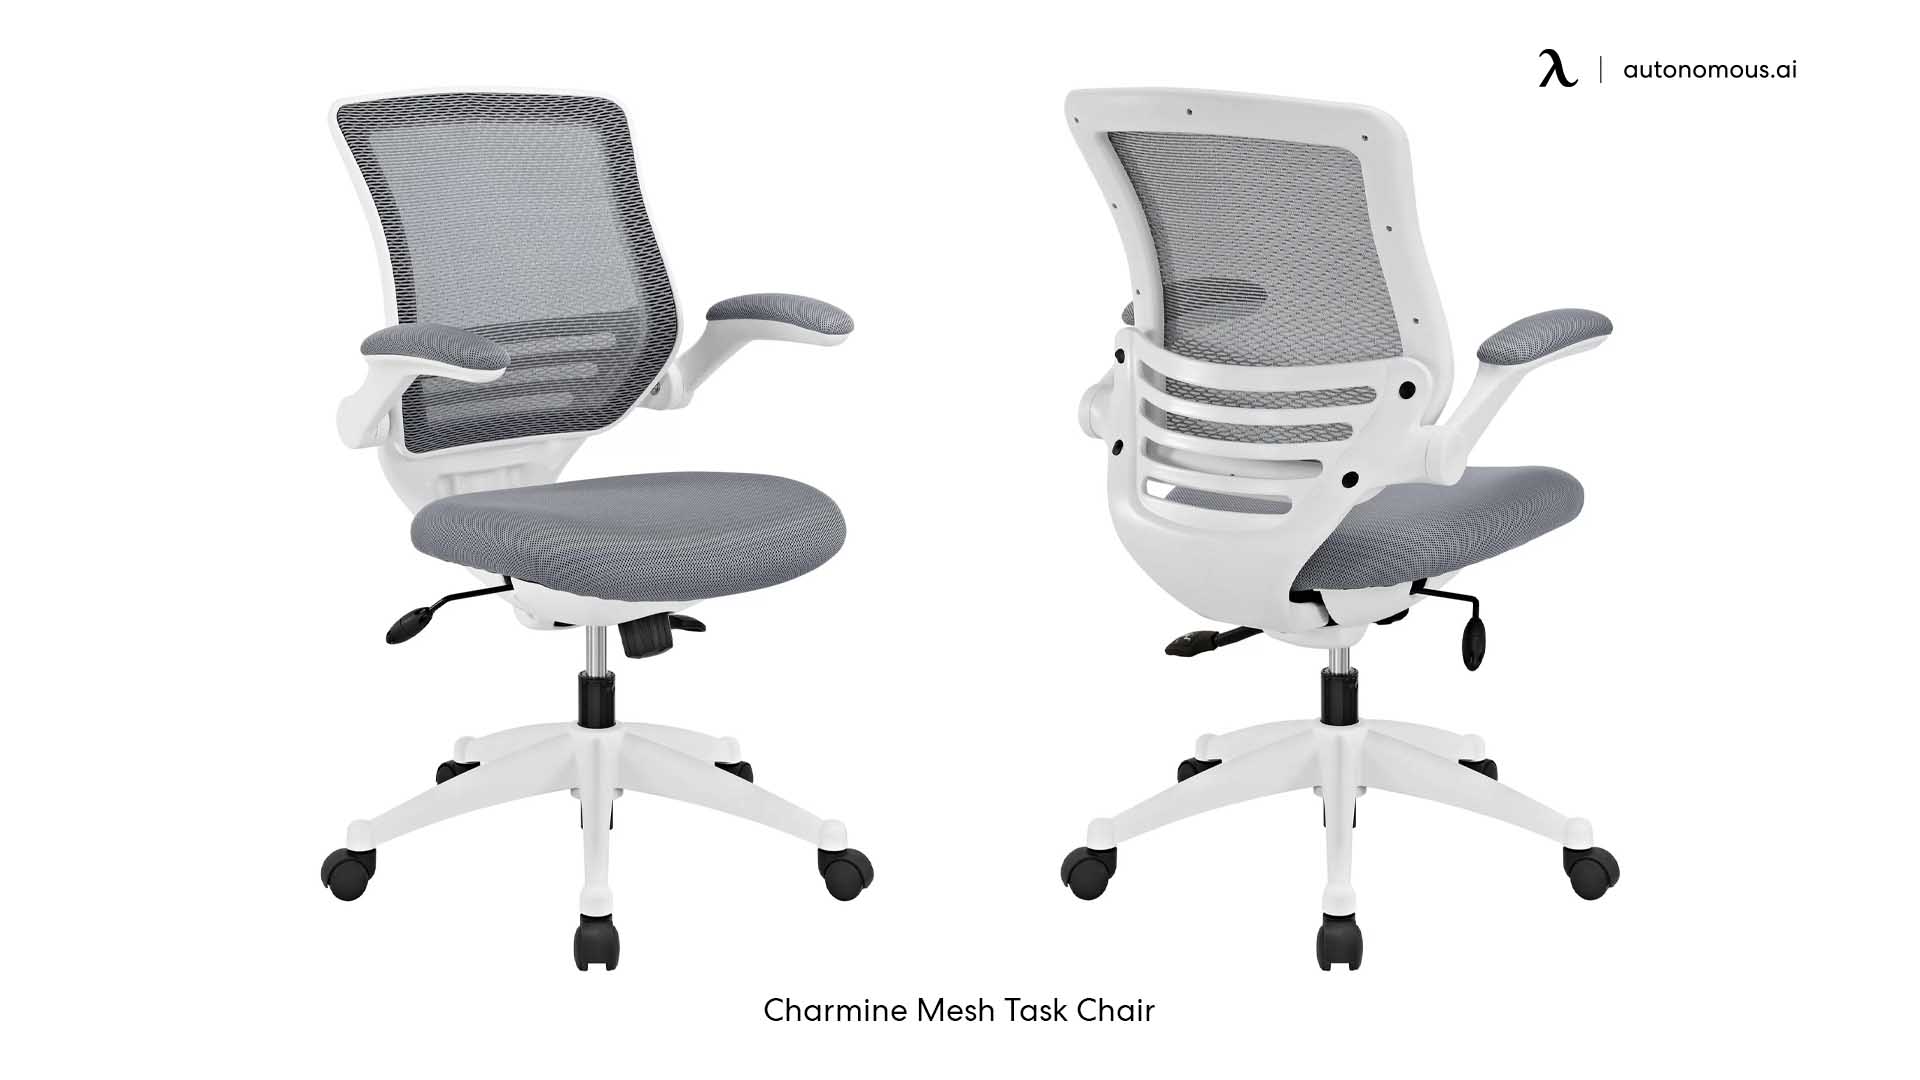 Charmine Mesh Task Chair